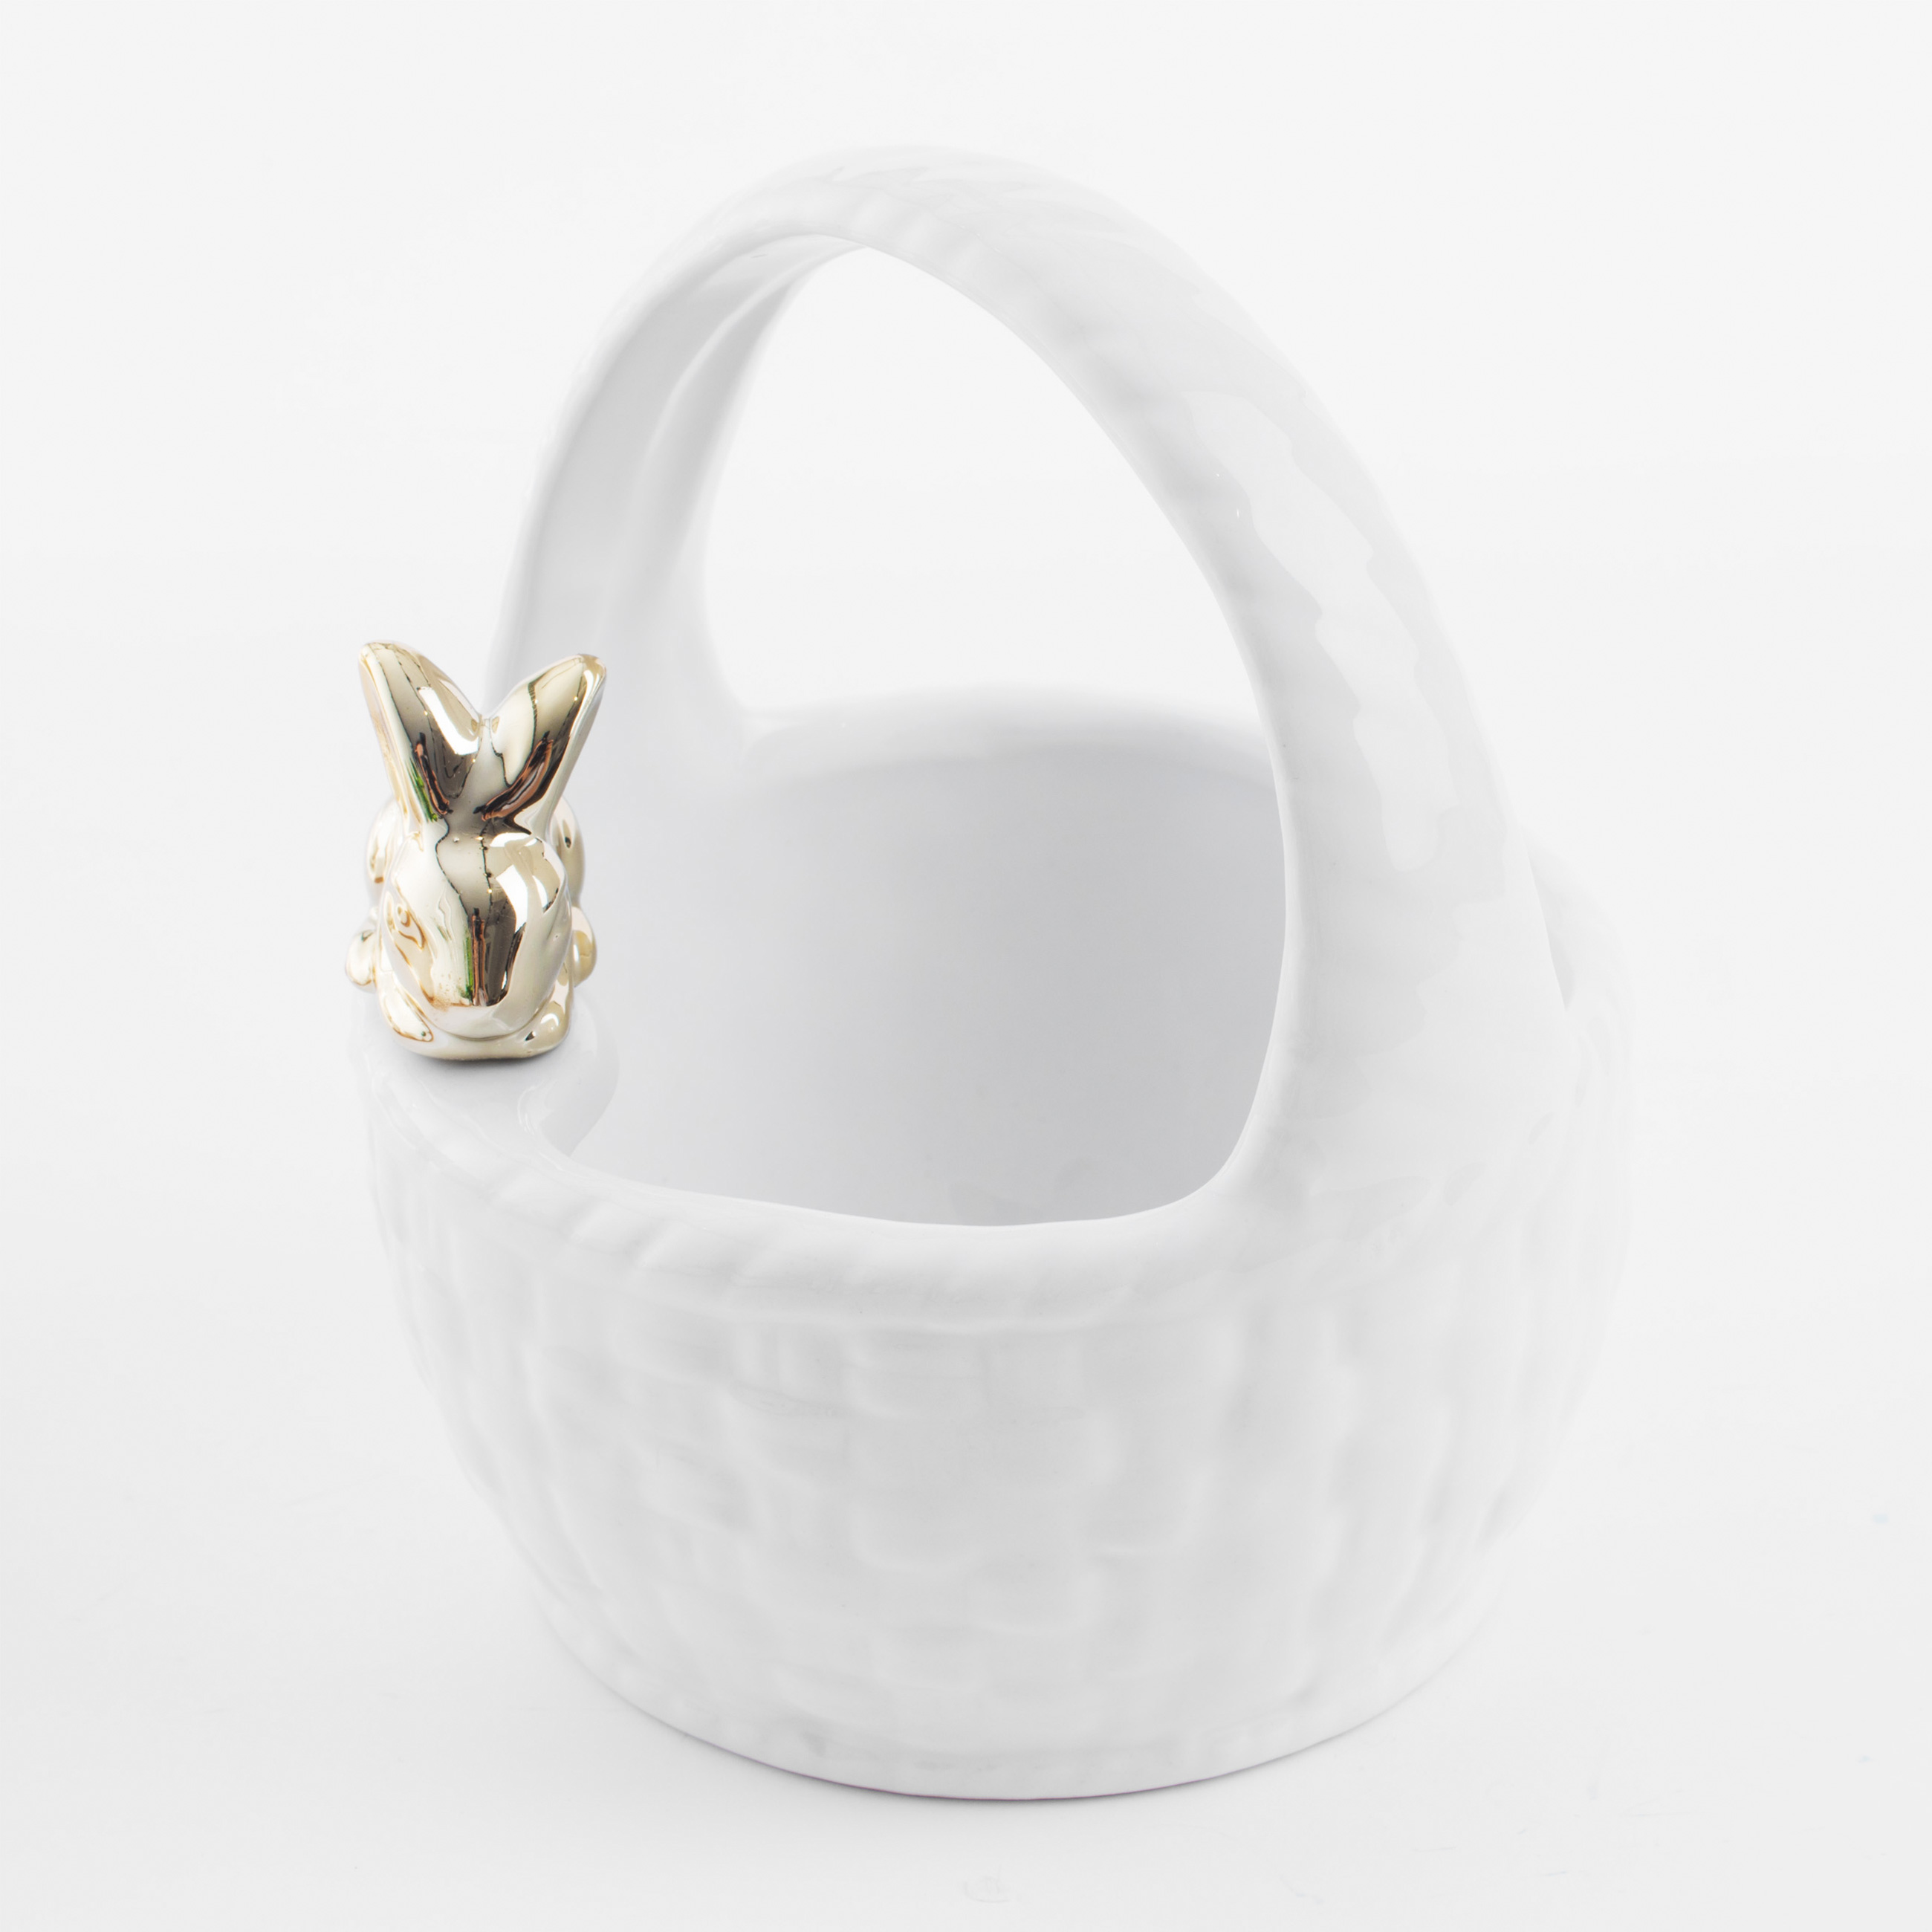 Конфетница, 12х14 см, с ручкой, керамика, белая, Кролик на корзине, Easter gold изображение № 2